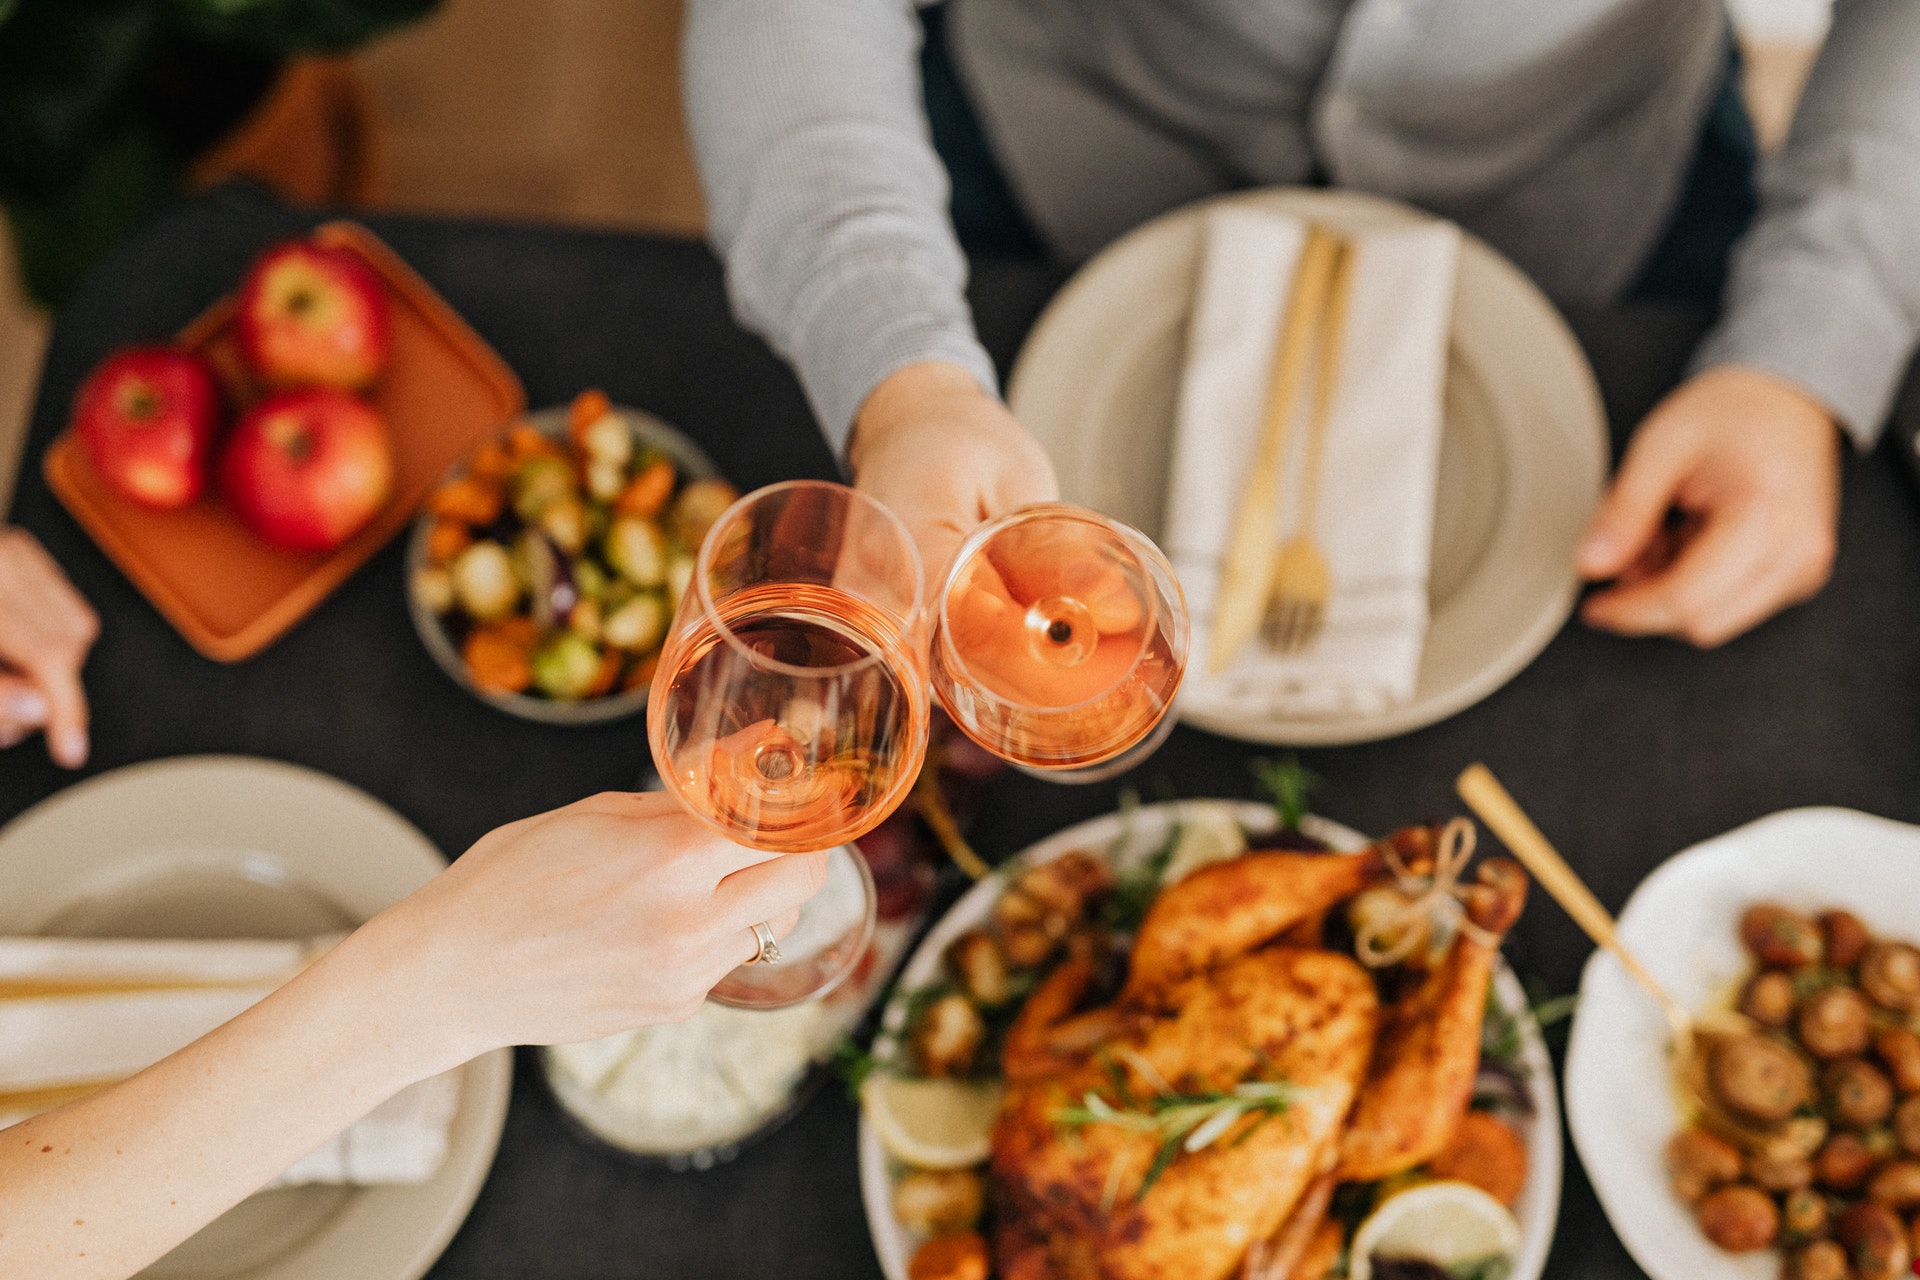 Ceias de Natal: a imagem mostra duas mãos brindando taças de vinho rosé. Embaixo há uma mesa onde se pode ver um peru e alguns outros pratos em segundo plano.